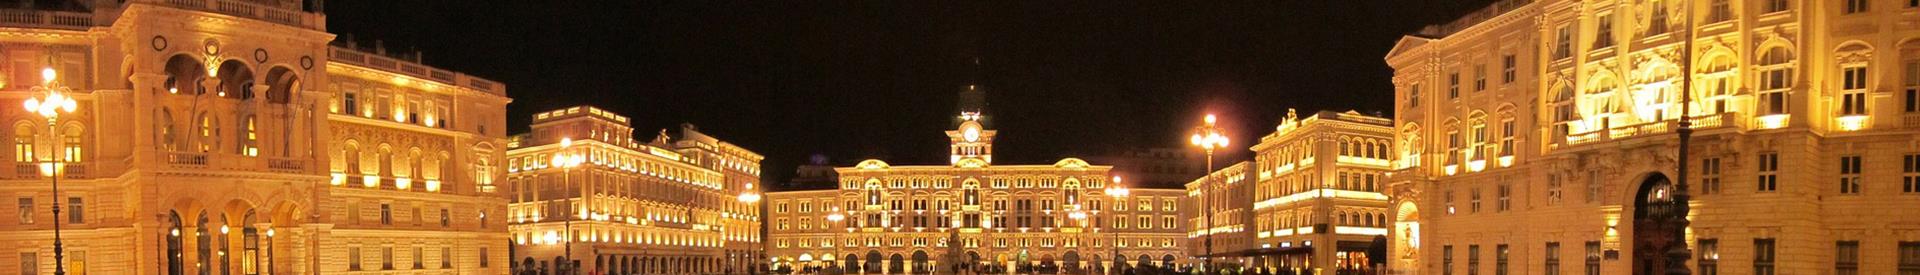  Cerchi un hotel per il tuo soggiorno a Trieste (TS)? Prenota al Best Western Hotel San Giusto